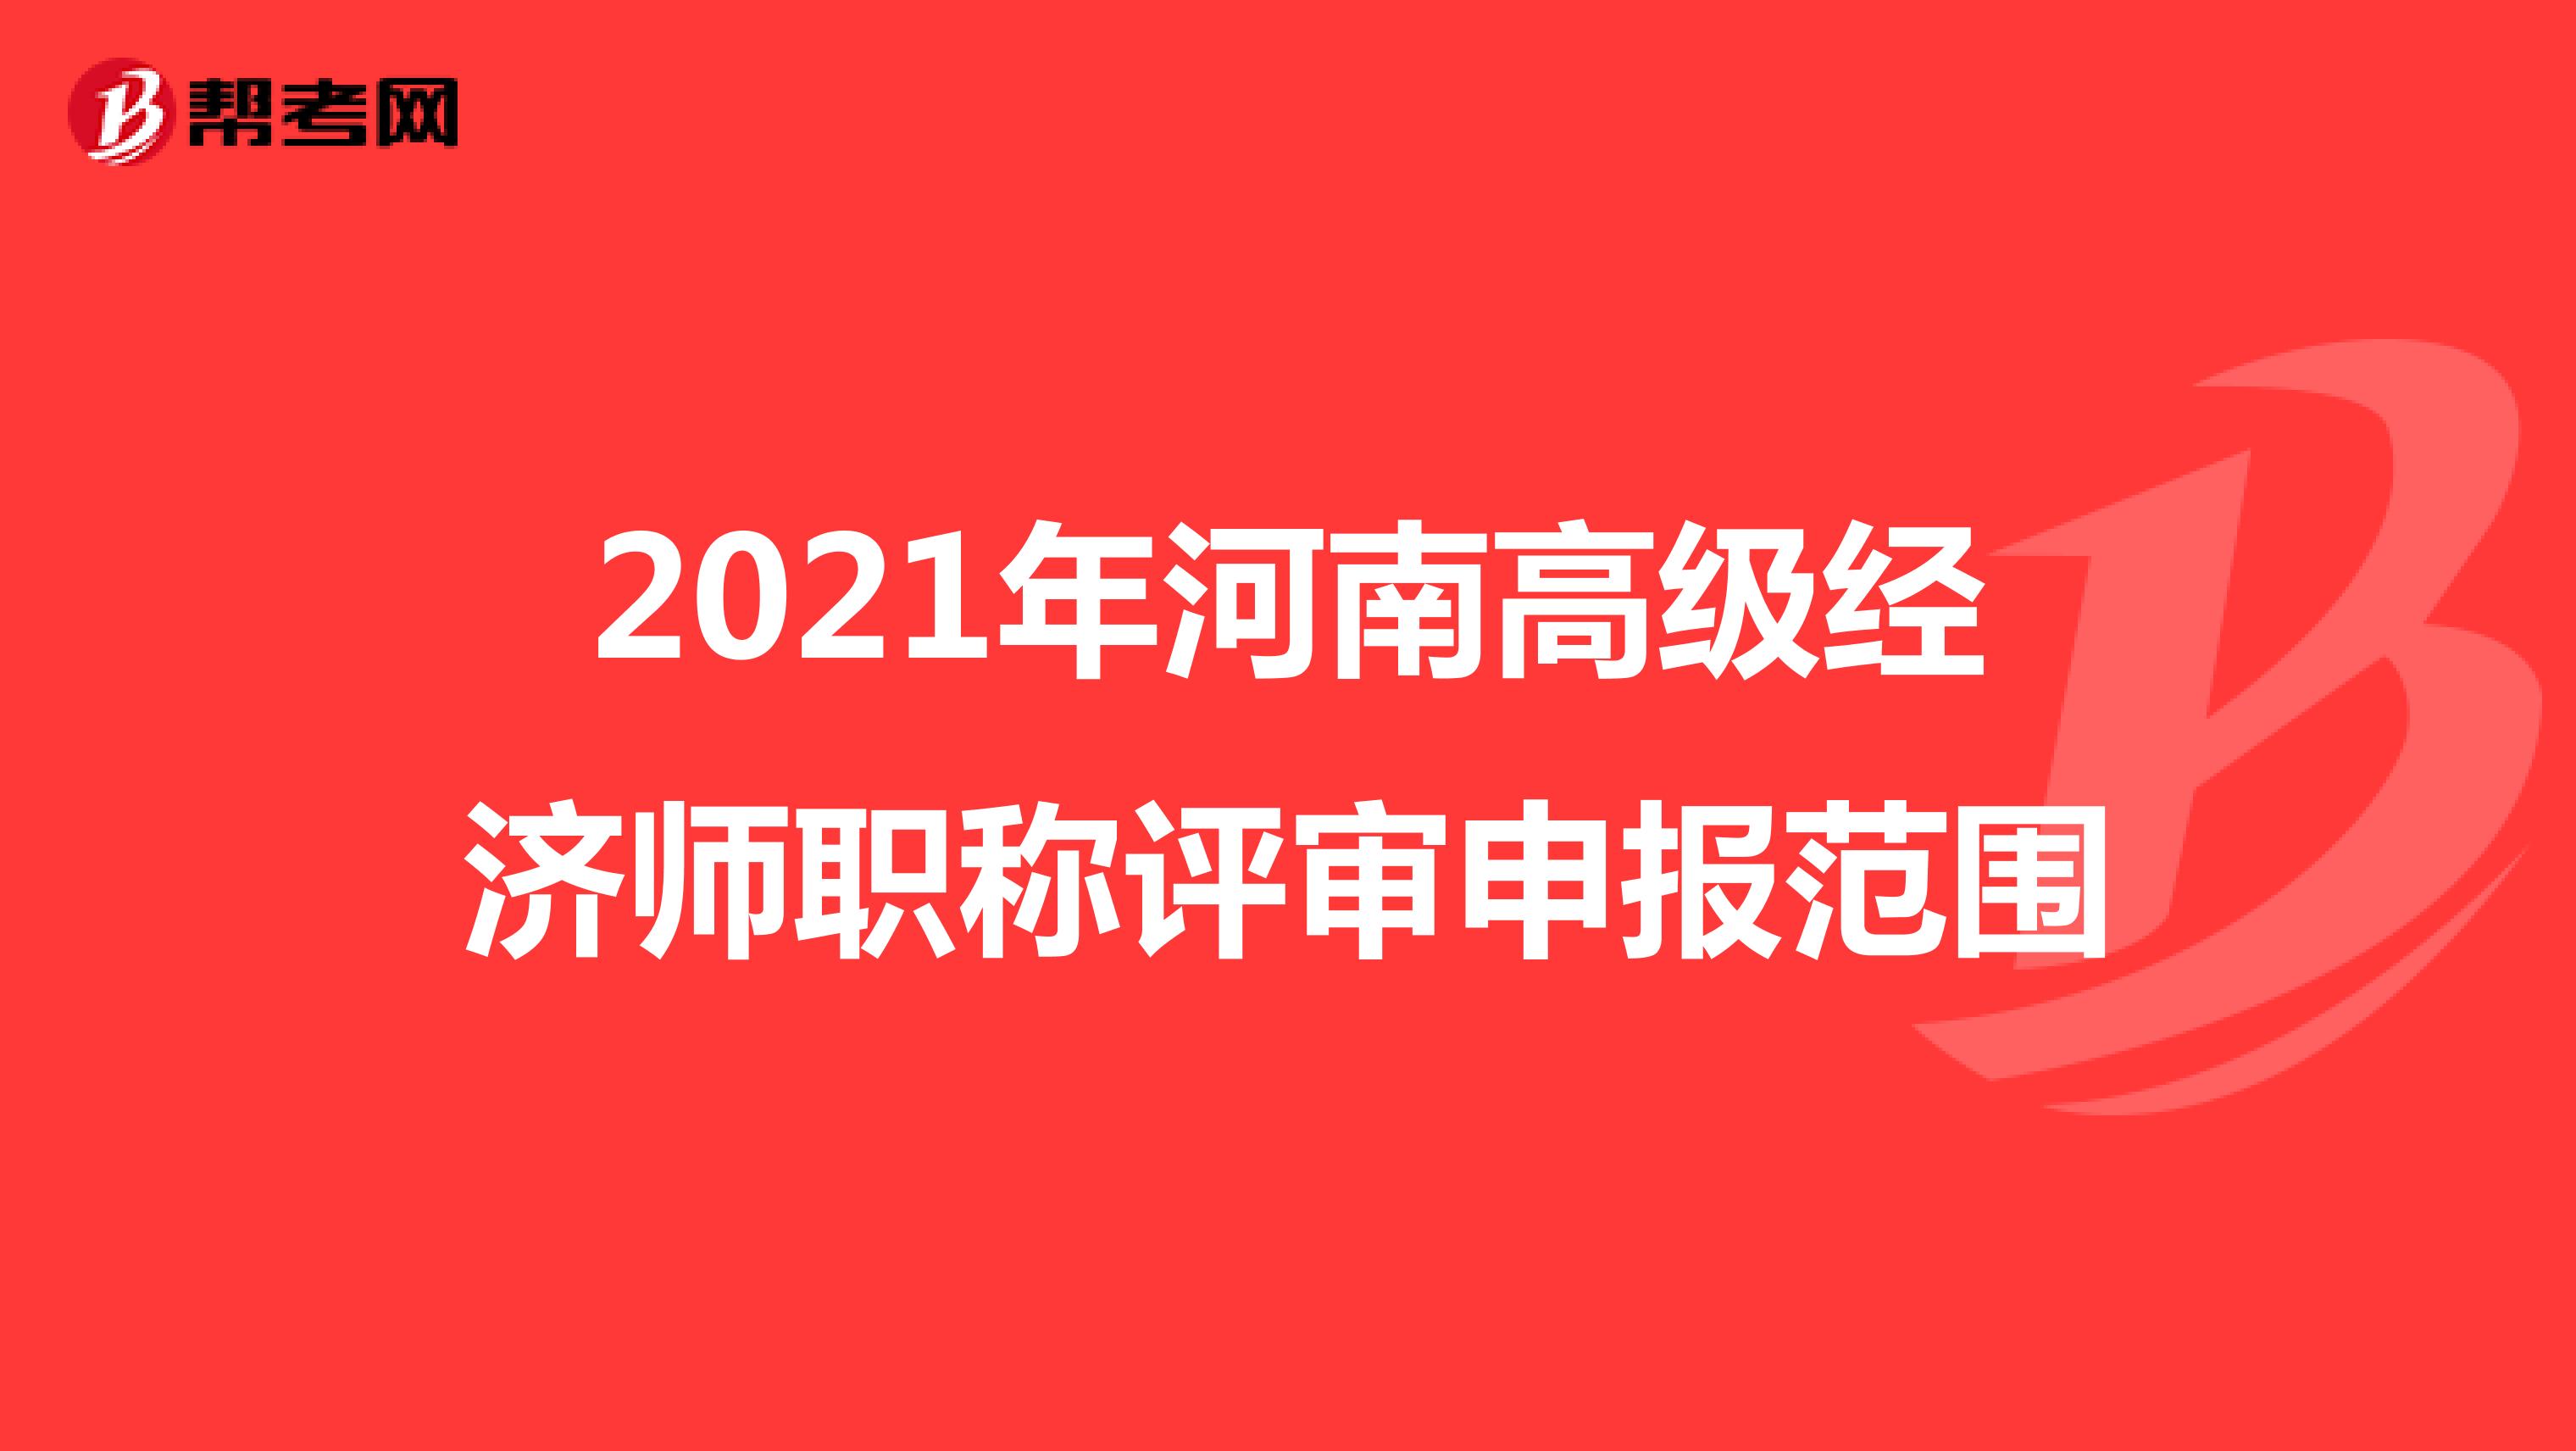 2021年河南高级经济师职称评审申报范围